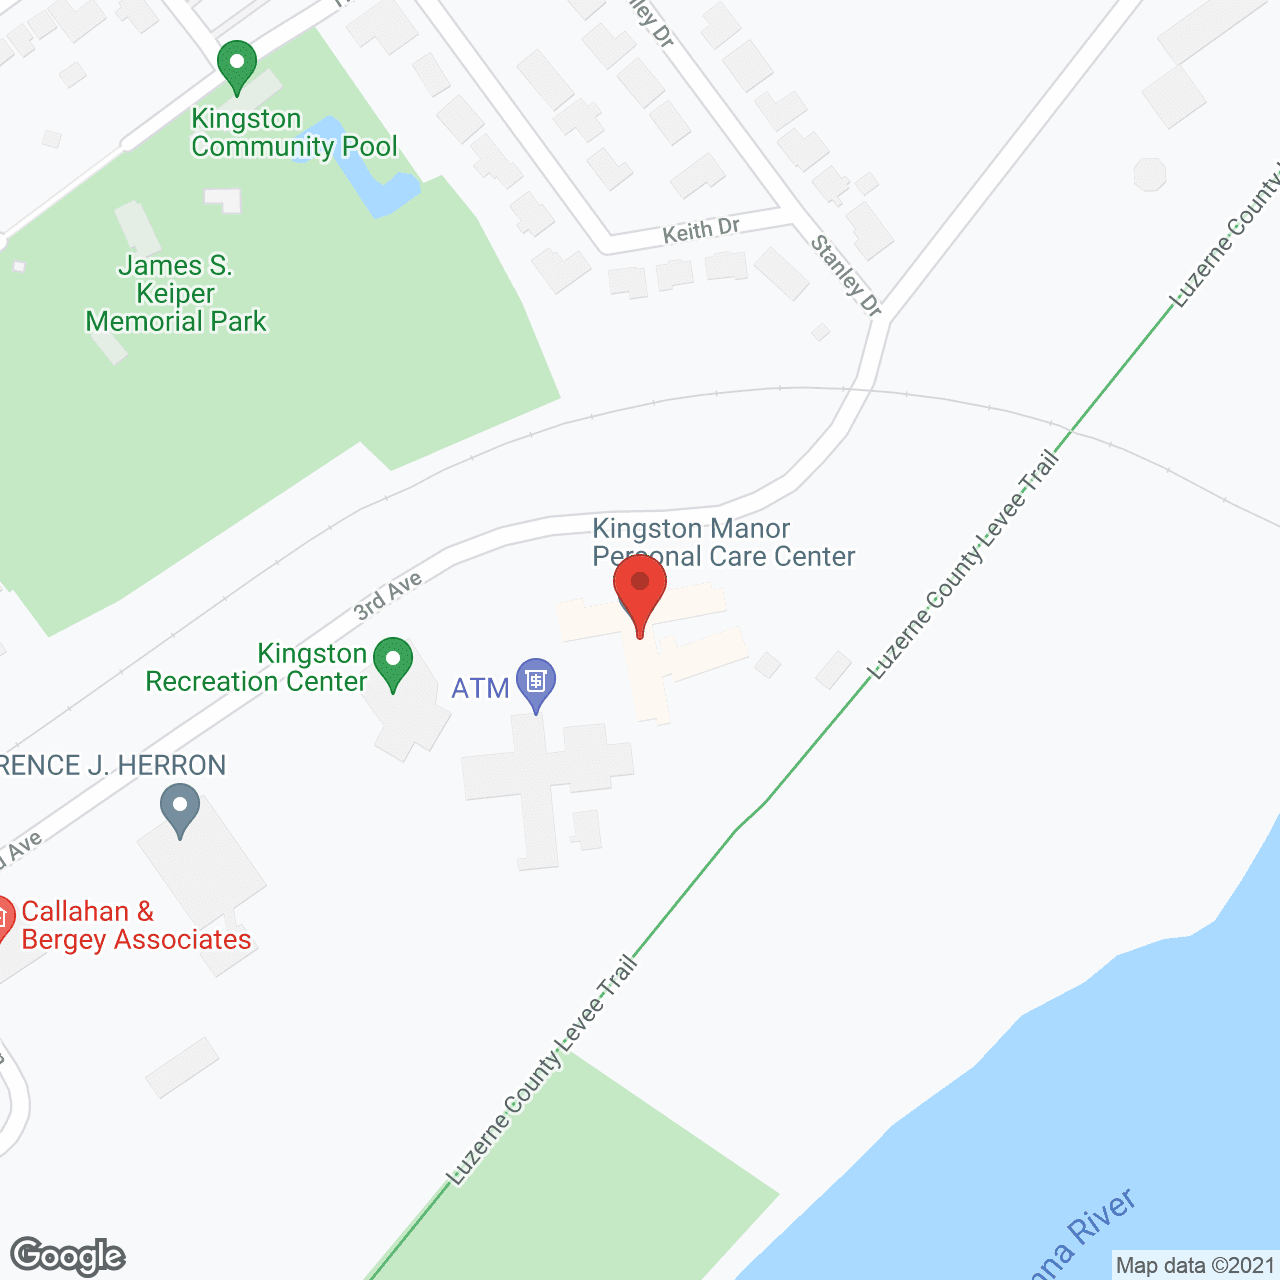 Serenity Care Kingston in google map